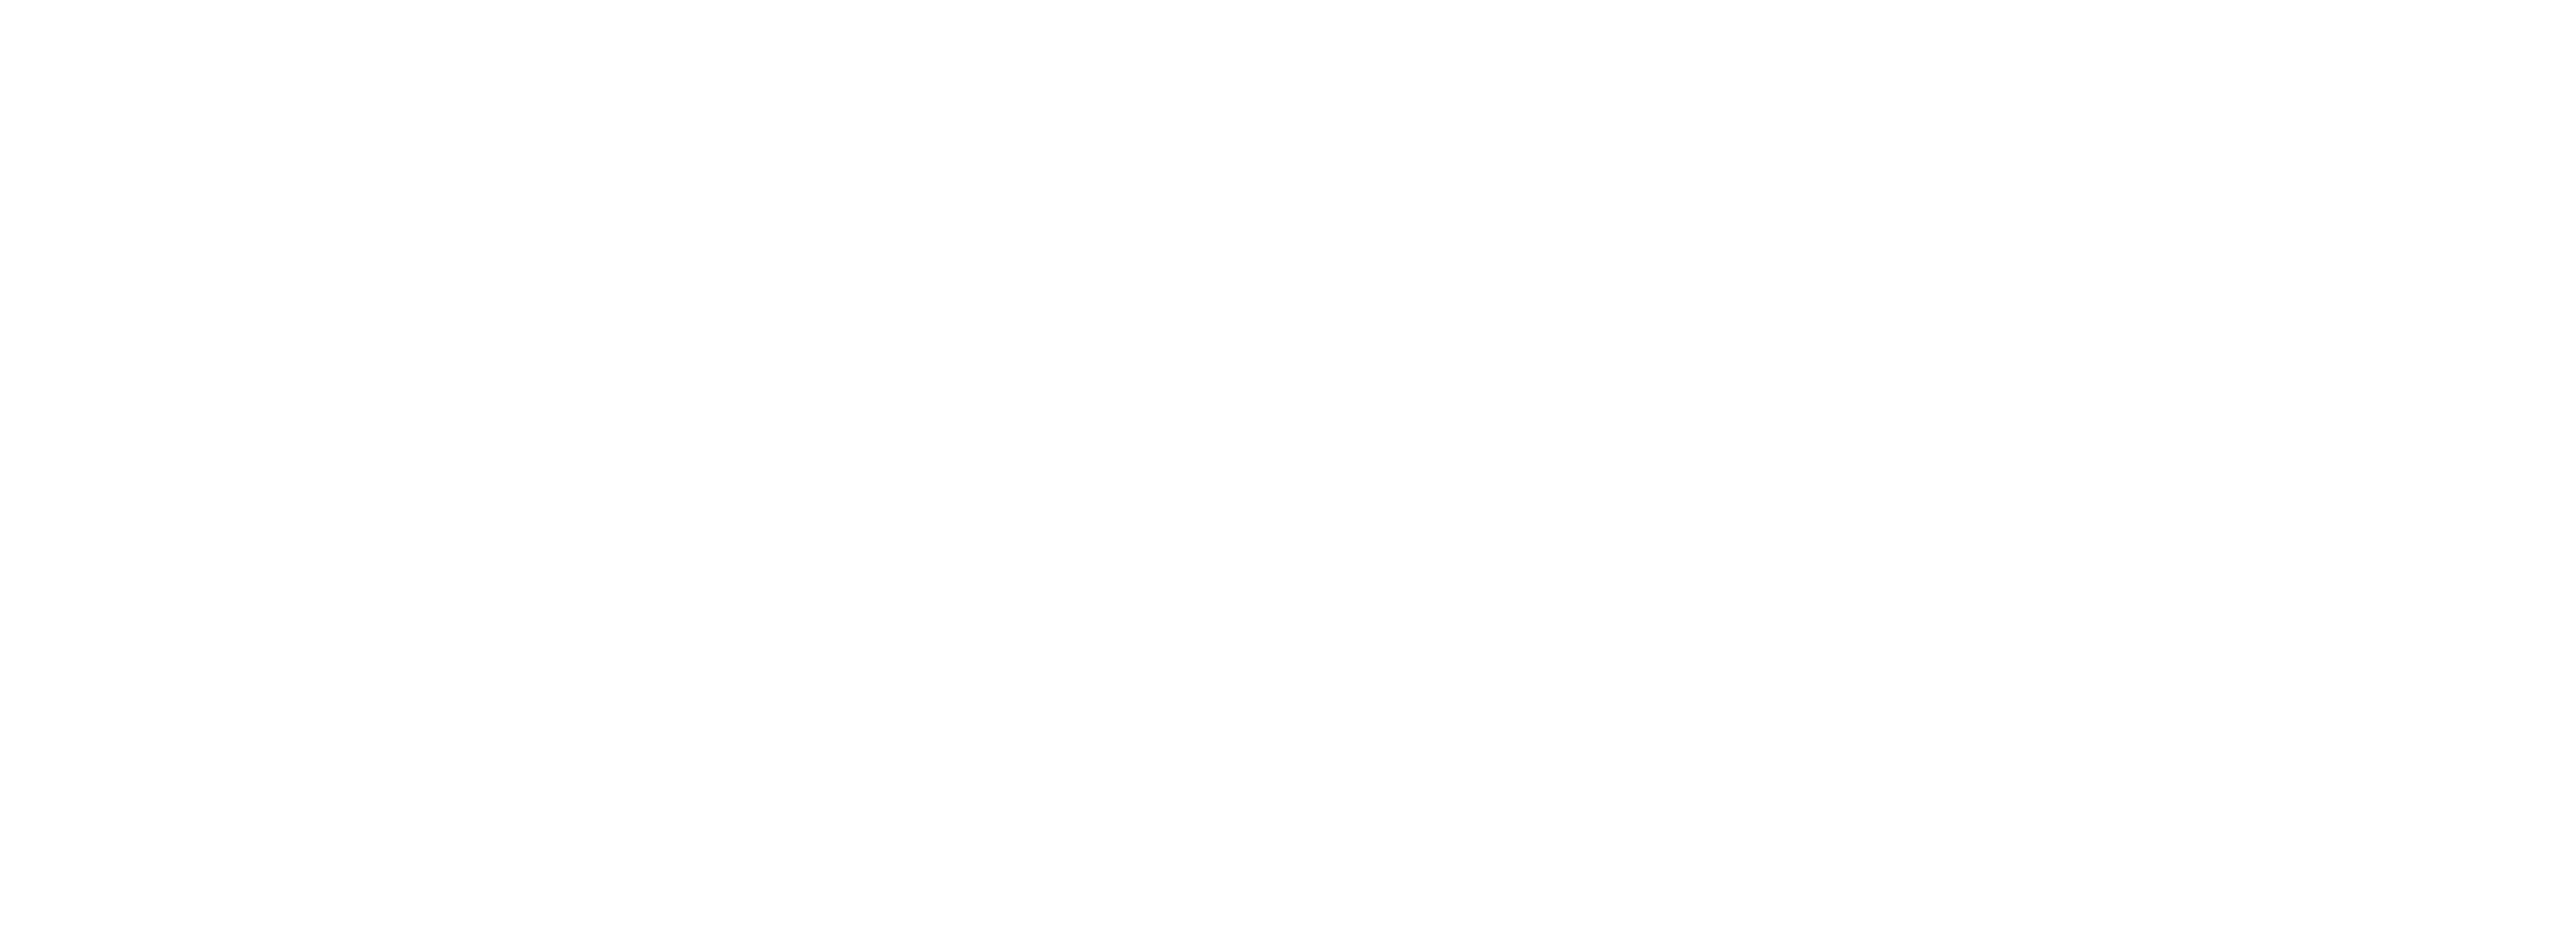 UYN Logo